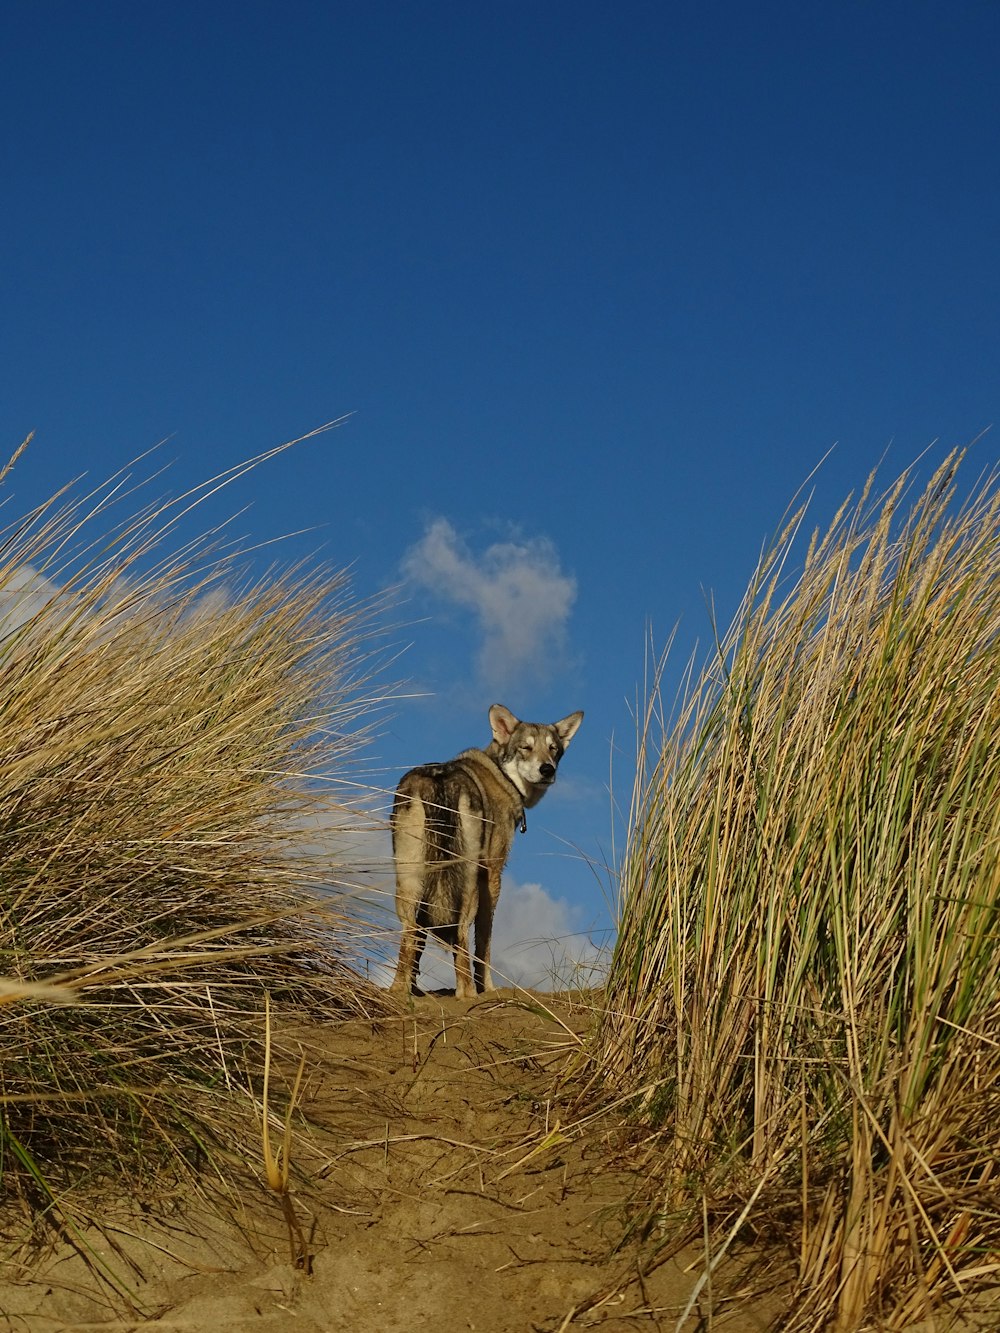 a zebra standing on top of a sandy beach